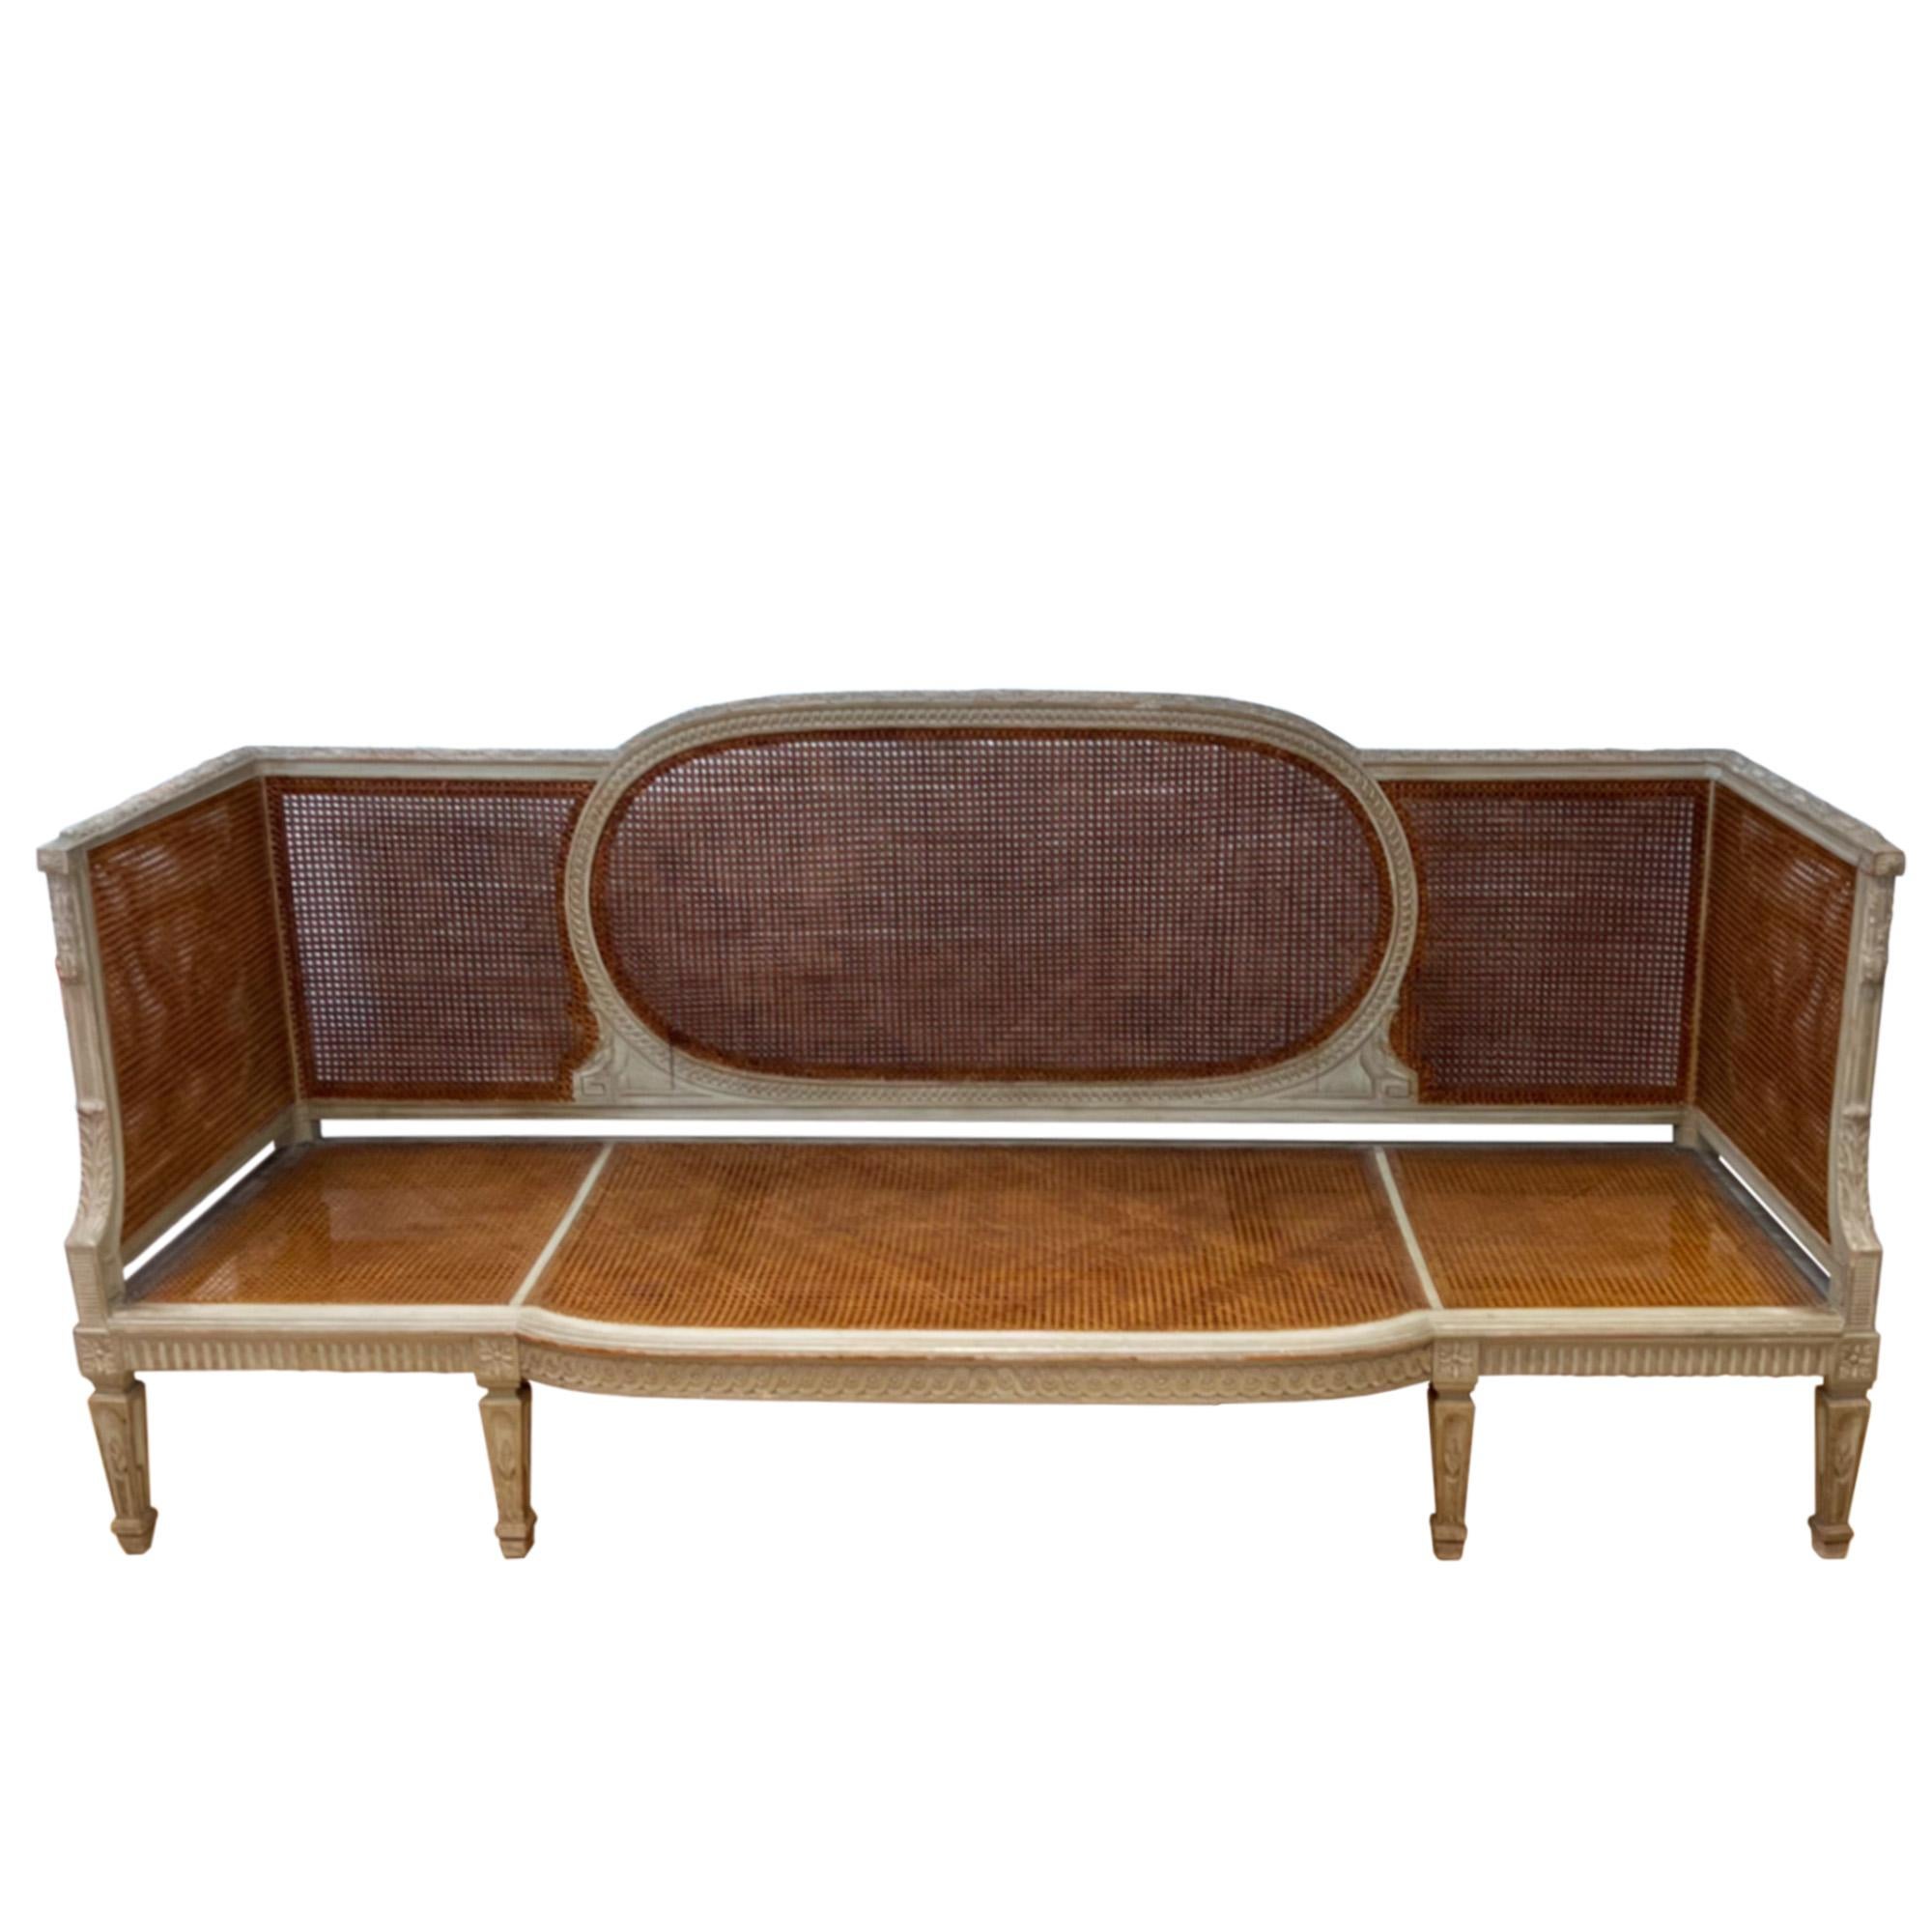 Ein fabelhaftes Paar großer Sofas im Stil von Maison Jansen aus den 1940er Jahren.

Sie sind aus handgeschnitztem Holz gefertigt und mit Rohrsitzen versehen - beide sind in einem fantastischen Zustand. Bitte schauen Sie sich alle unsere Fotos an, um